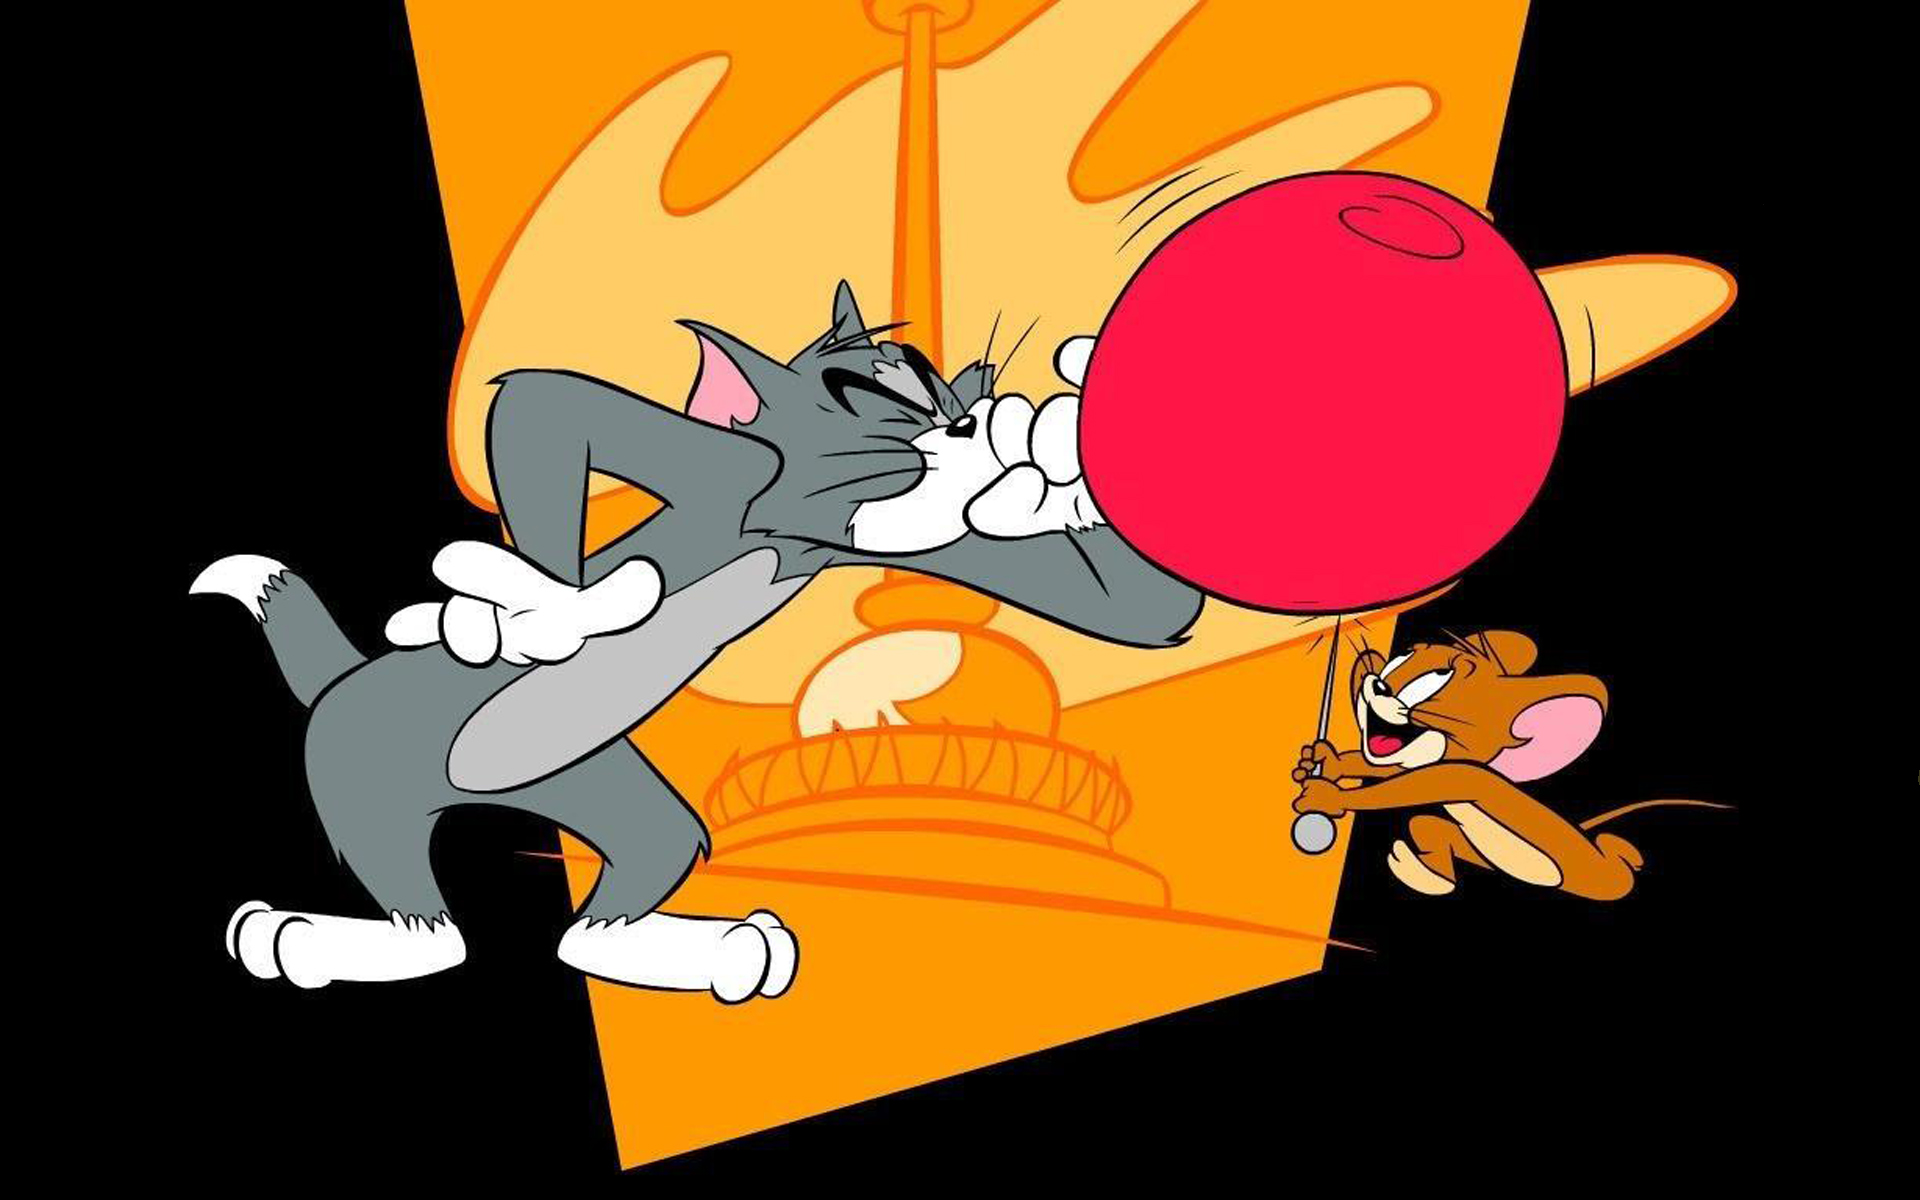 В каком году вышел том и джерри. Tom and Jerry. Том и Джерри cartoon. Том и Джерри Джерри.